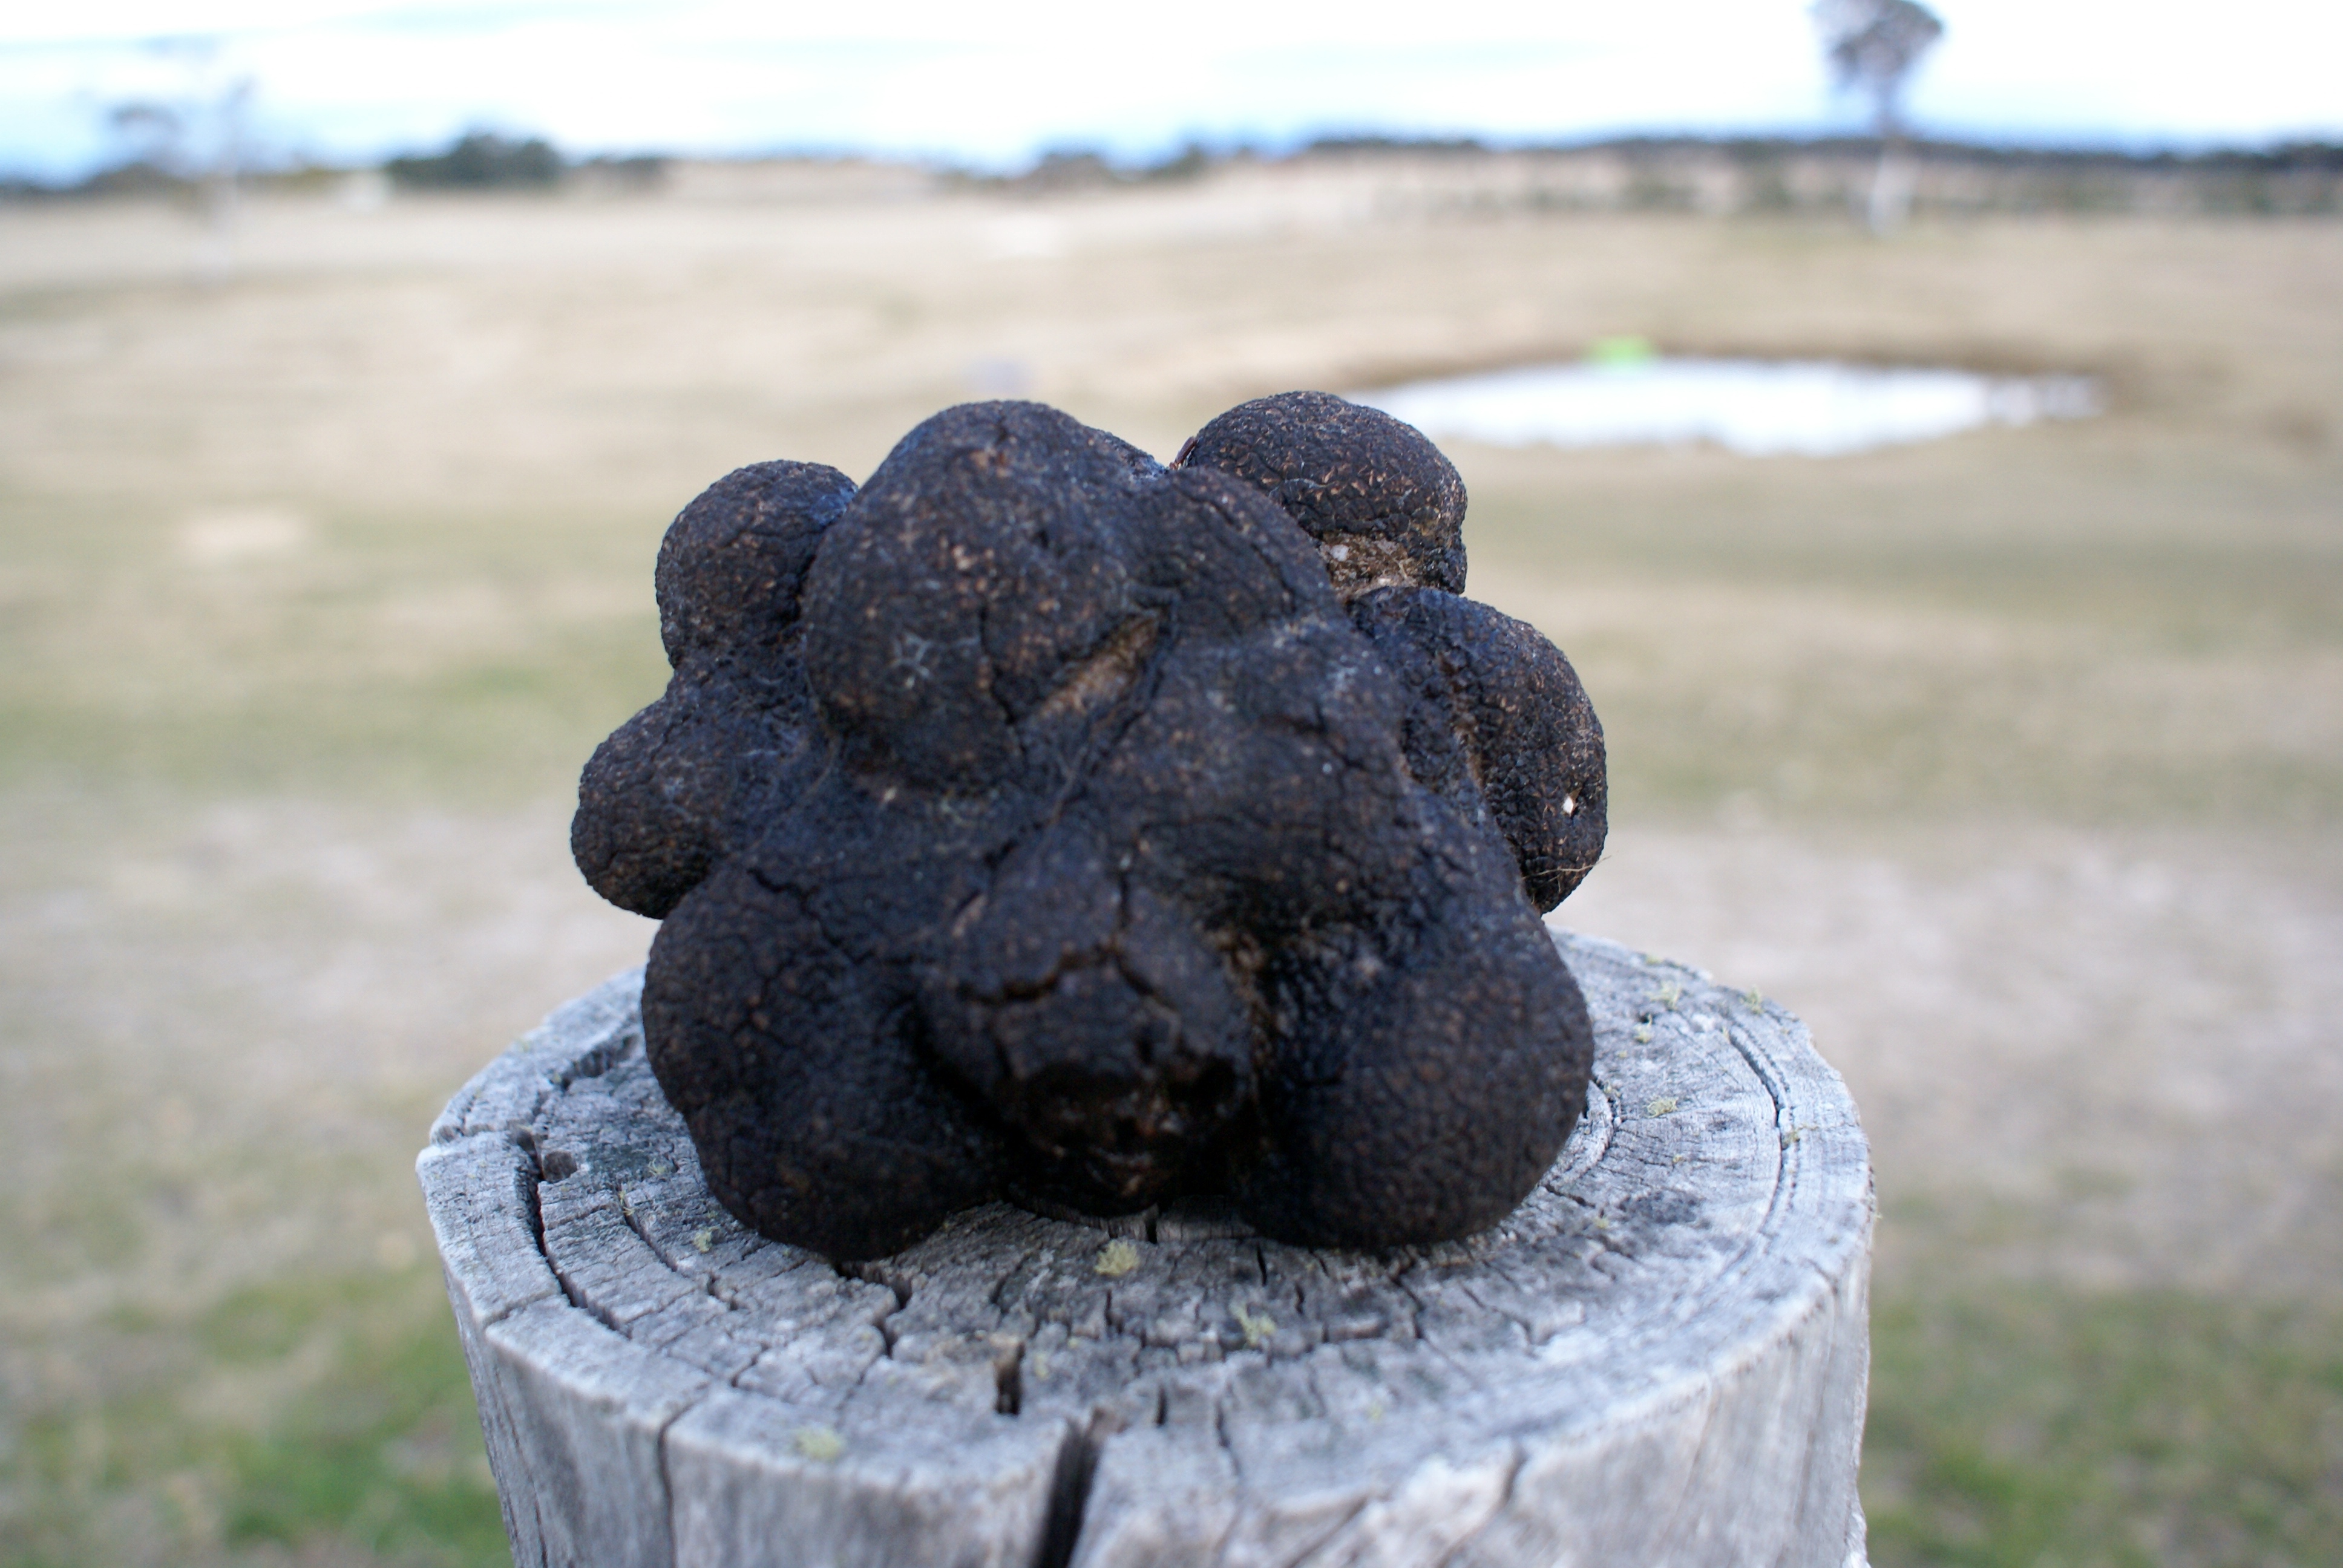 567gram truffle